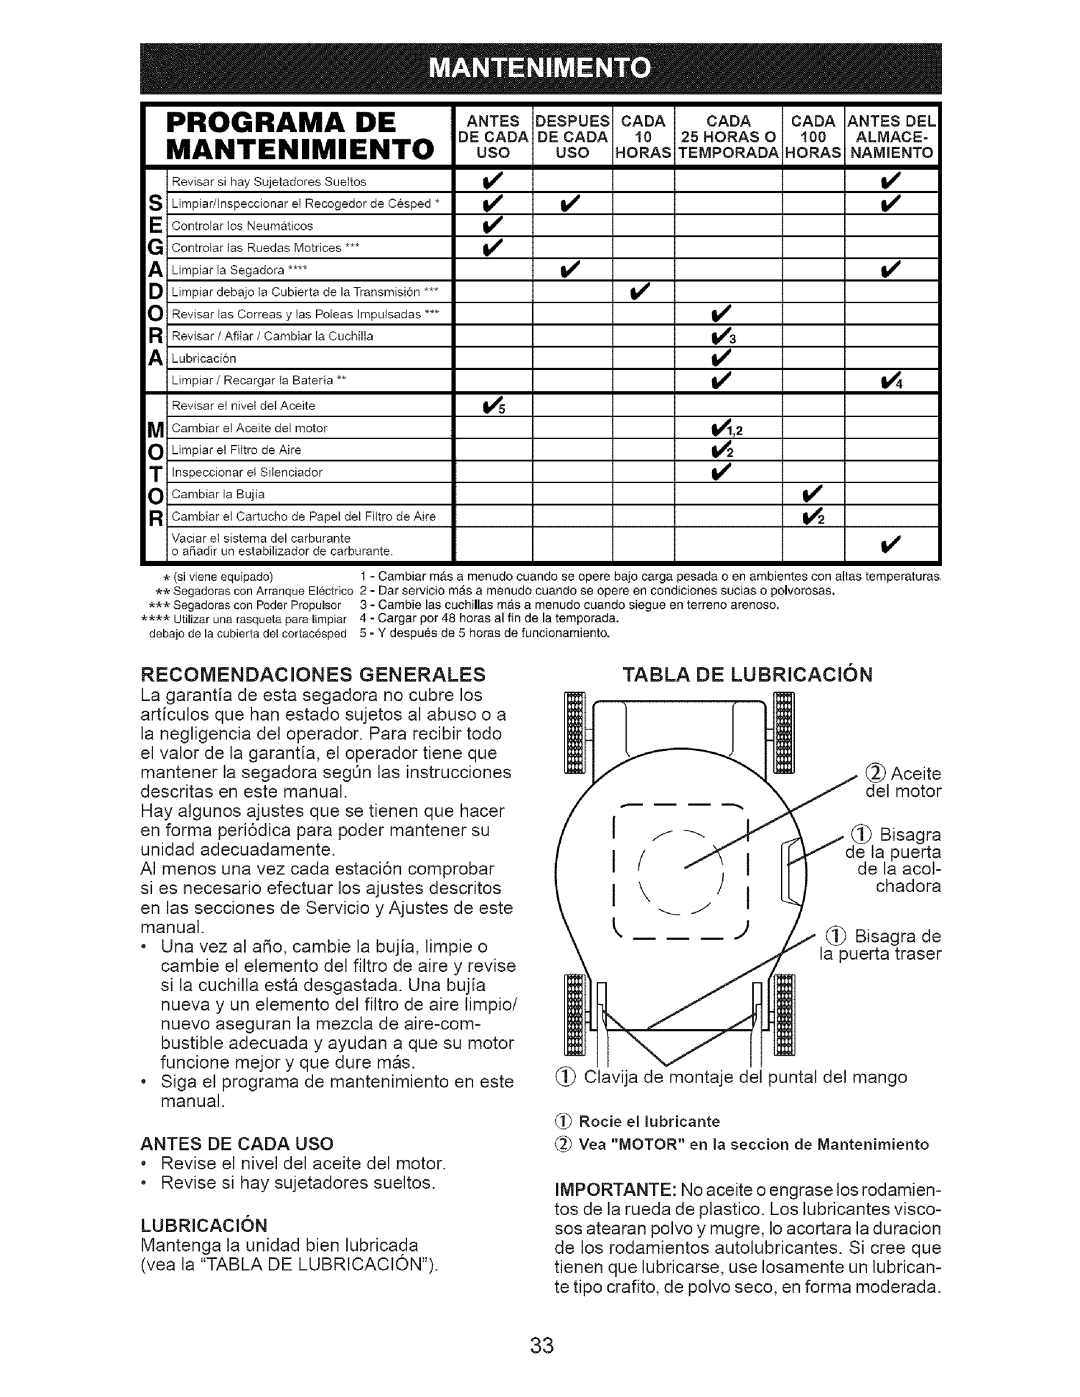 Craftsman 917.37712 manual Programa De, Mantenimiento, DECAOAOECAOAI0 2 .ORASO 100 ALMACE 